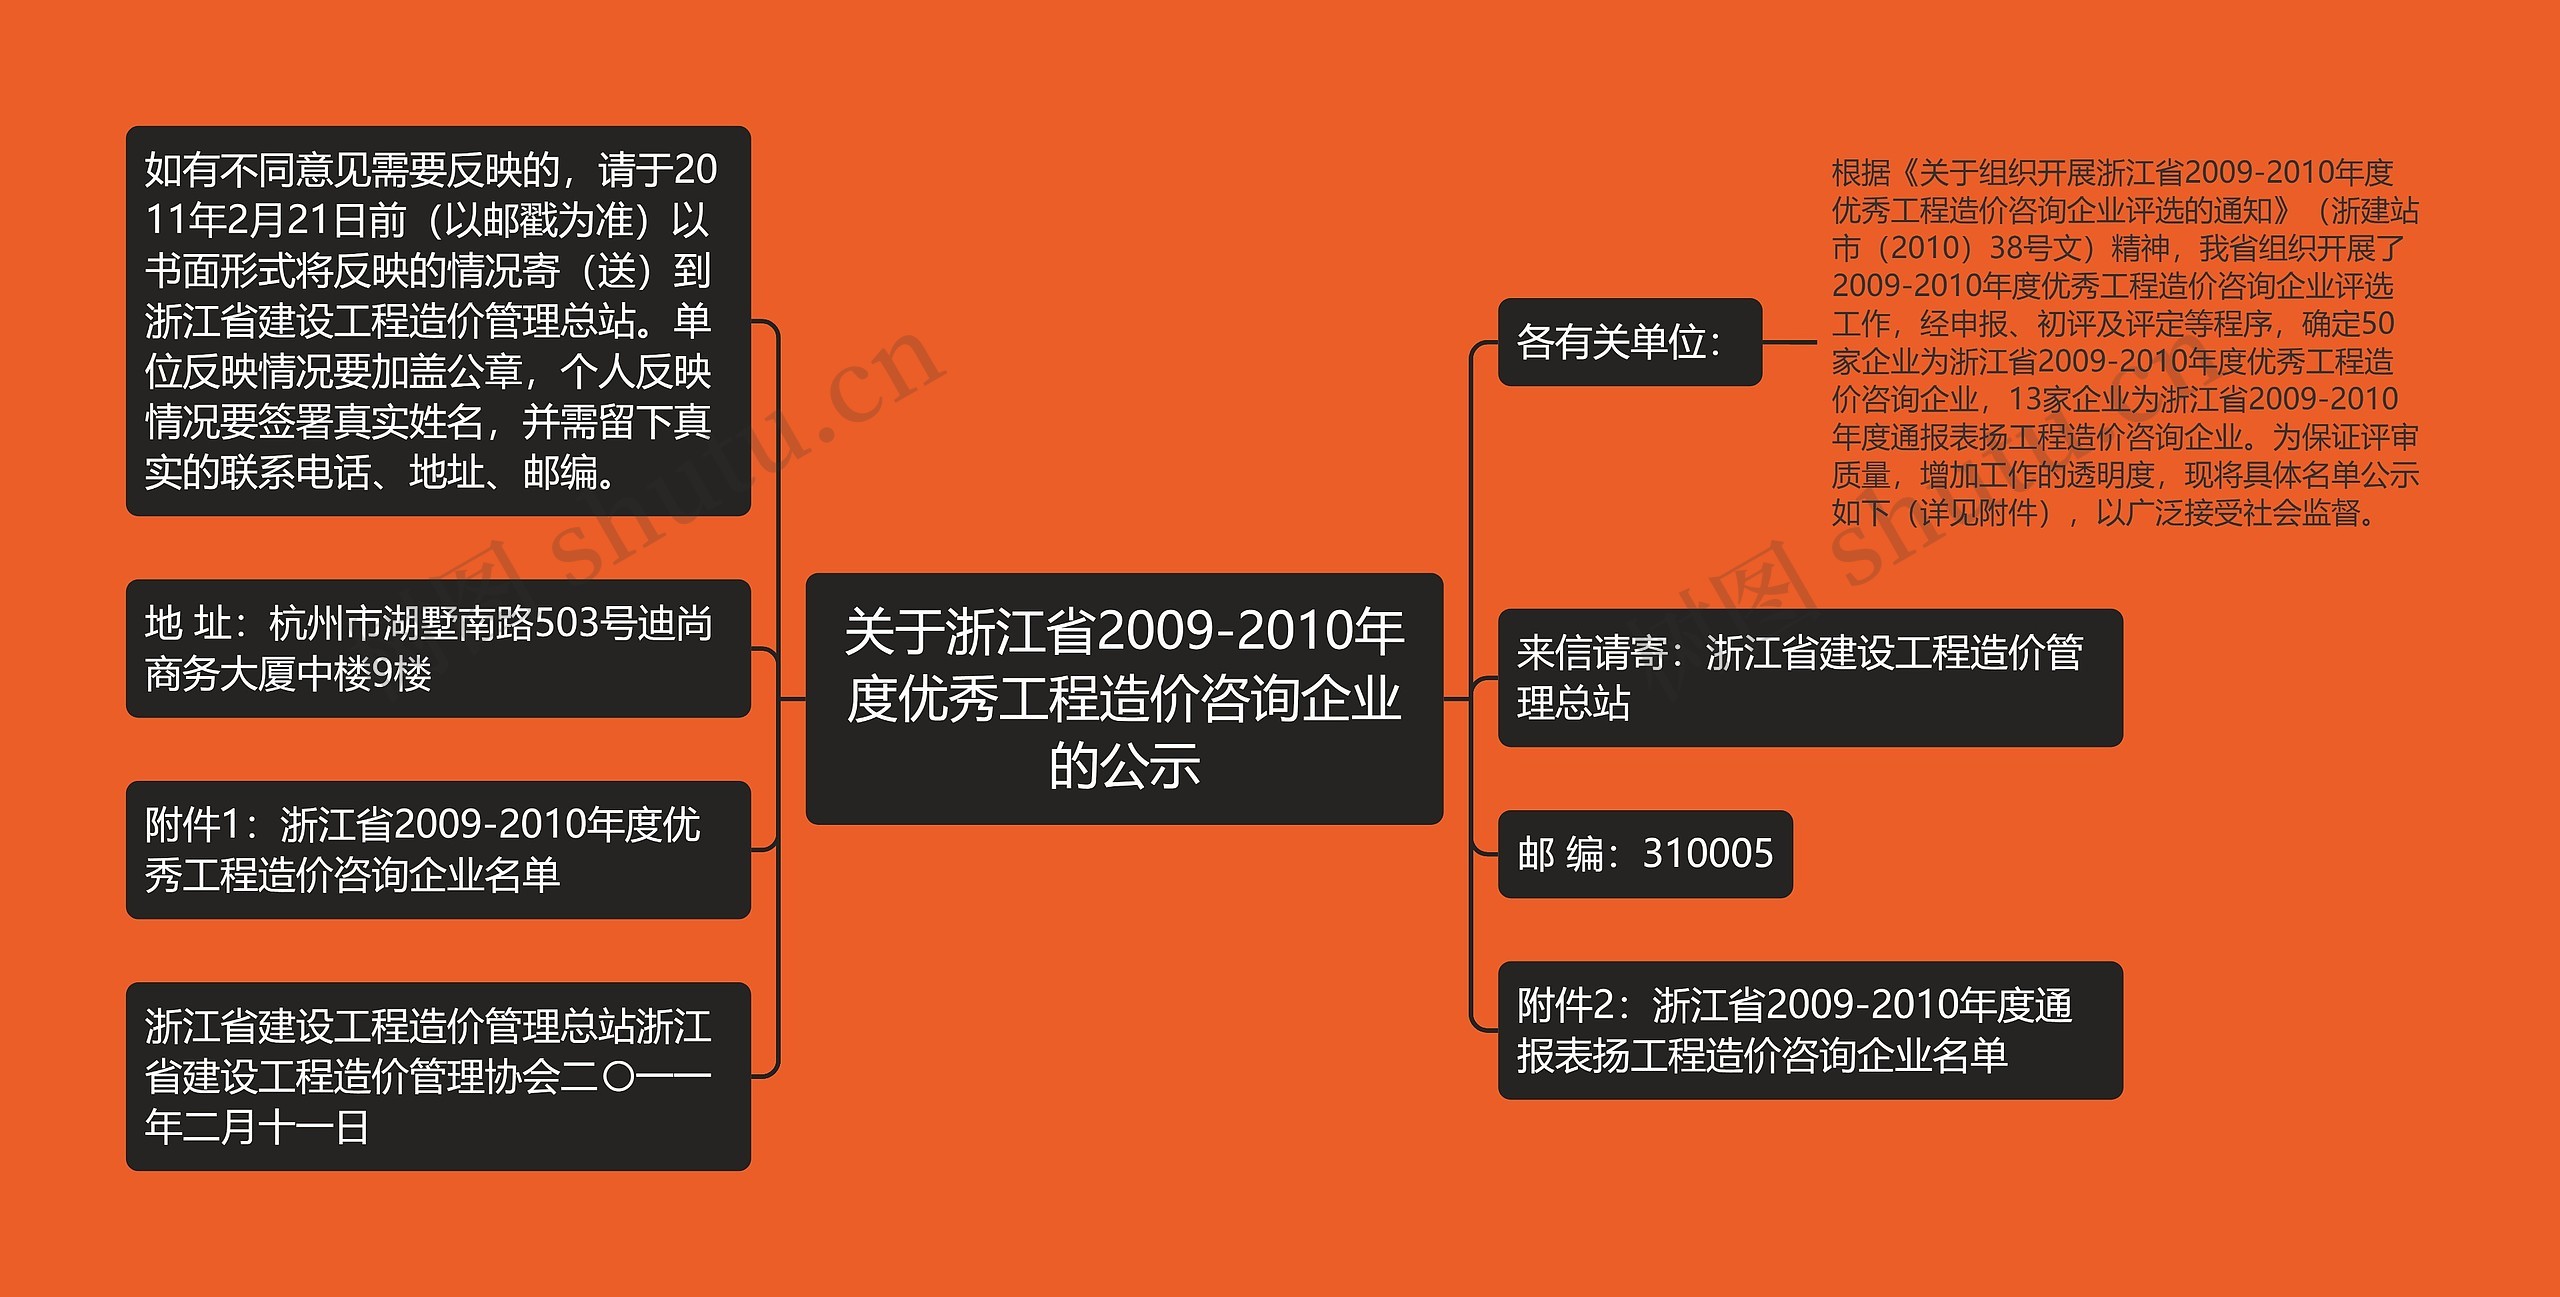 关于浙江省2009-2010年度优秀工程造价咨询企业的公示